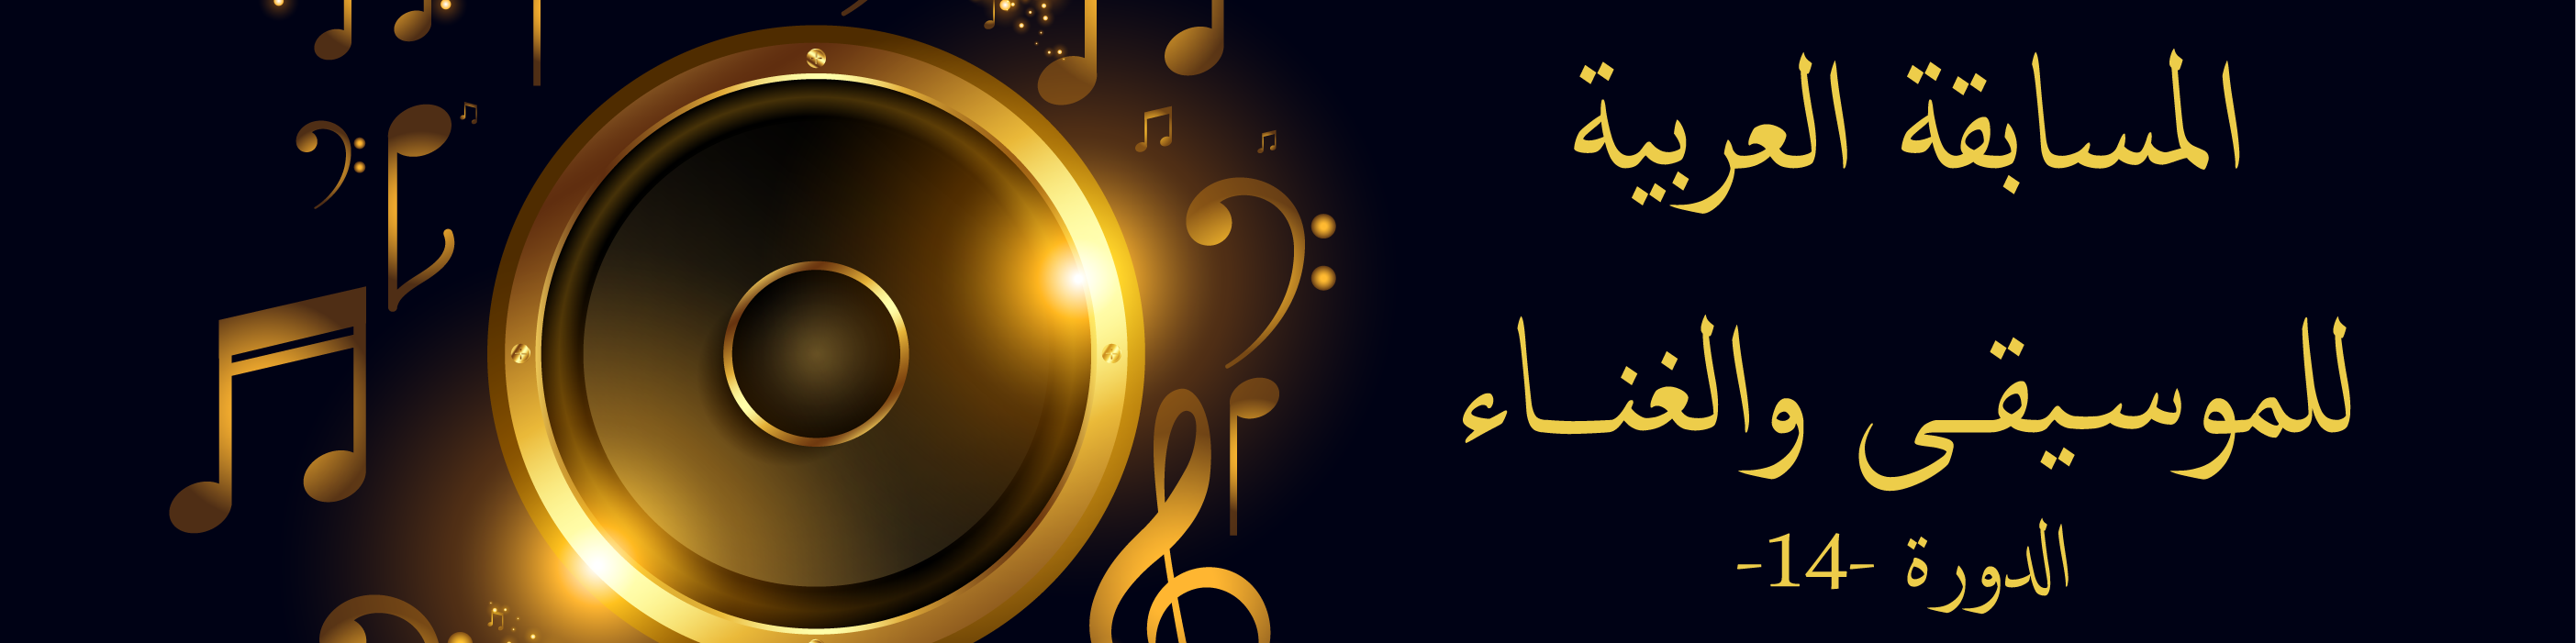 الاتحاد يسند جائزة في مهرجان الأغنية التونسية ويستعد لتنظيم  المسابقة العربية للموسيقى والغناء